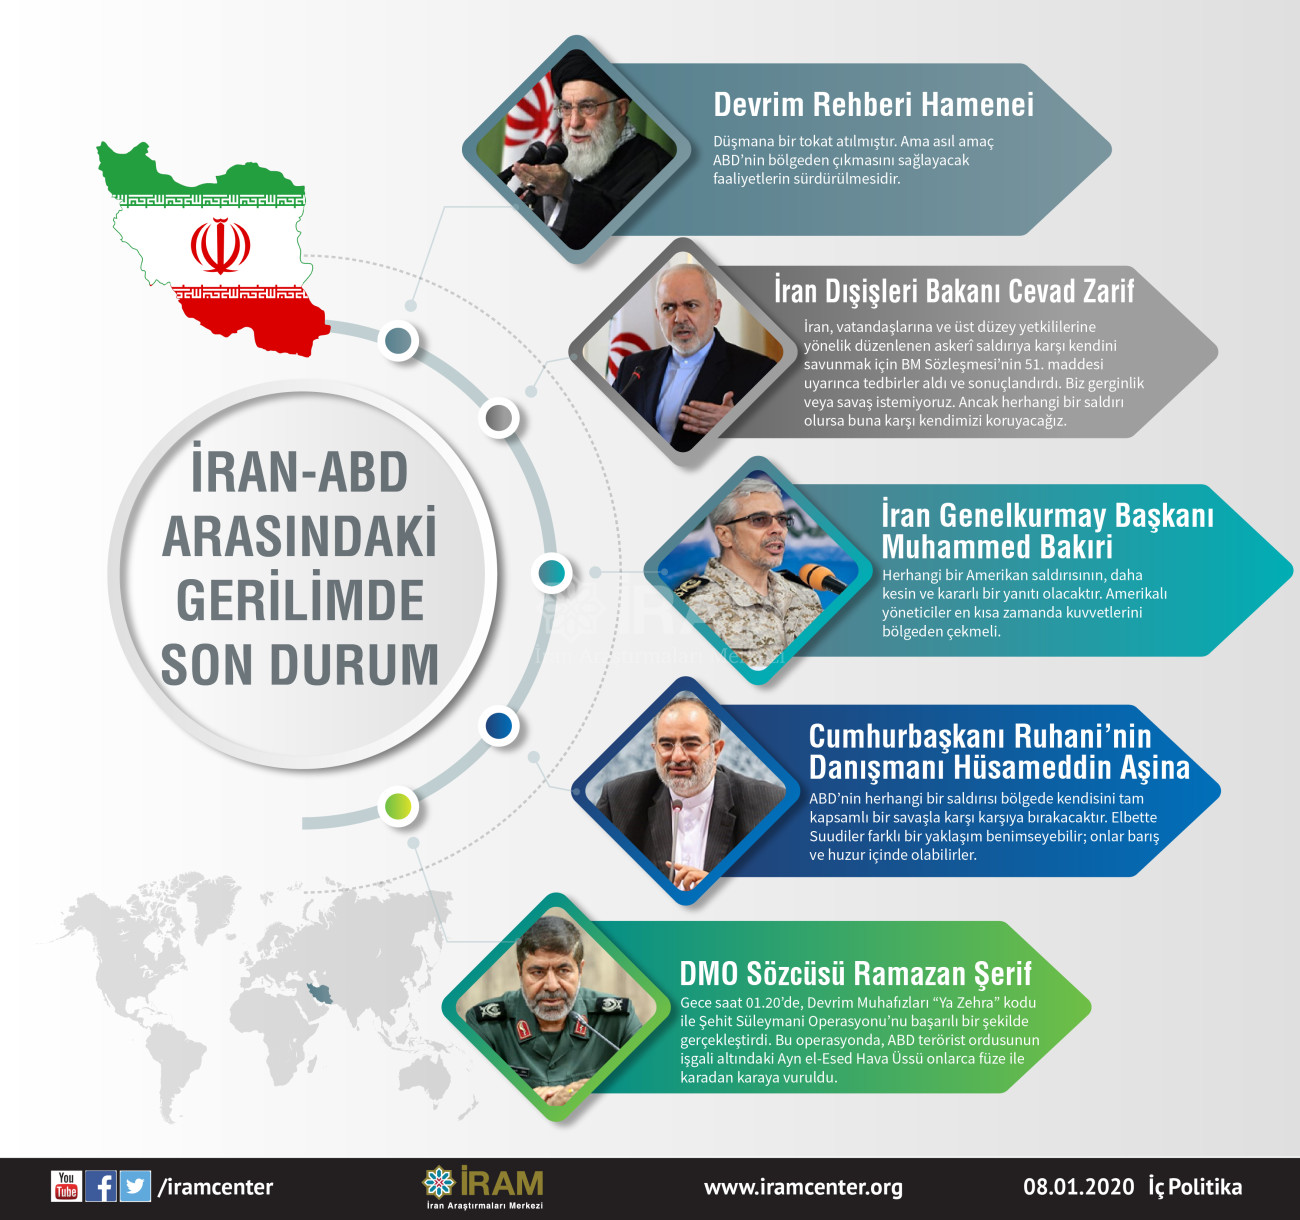 İran-ABD Arasındaki Gerilimde Son Durum